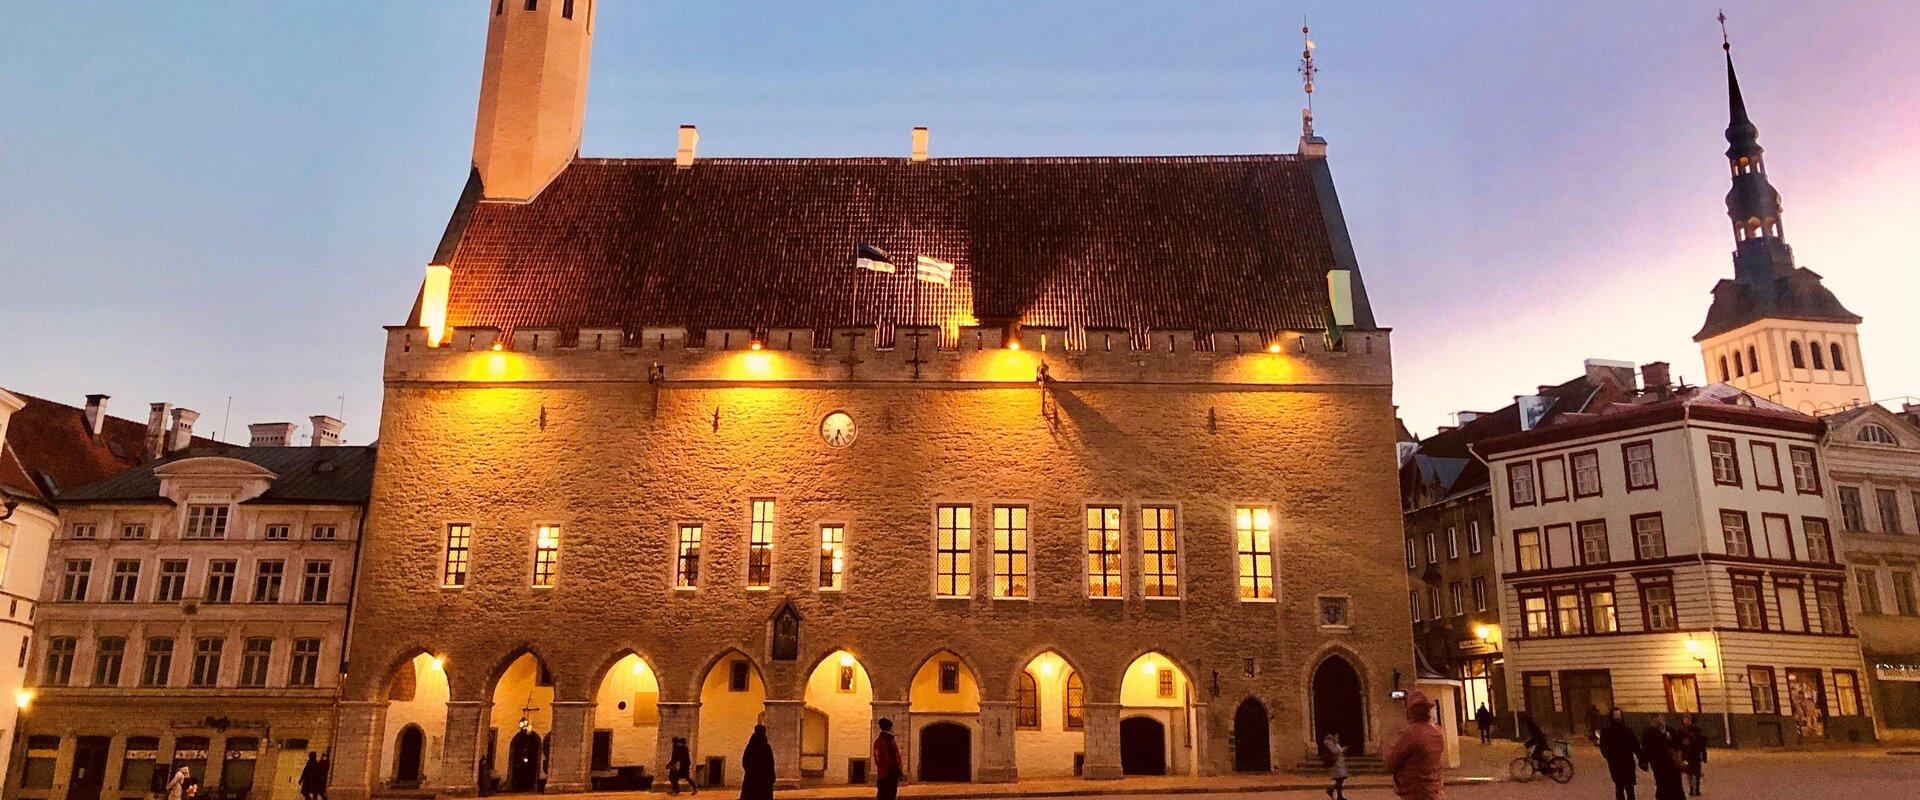 Das Tallinner Rathaus ist das älteste Rathaus in Nordeuropa. In 2022 wurden es 700 Jahre von der Ersterwähnung des Rathauses in 1322. Die Baugeschicht